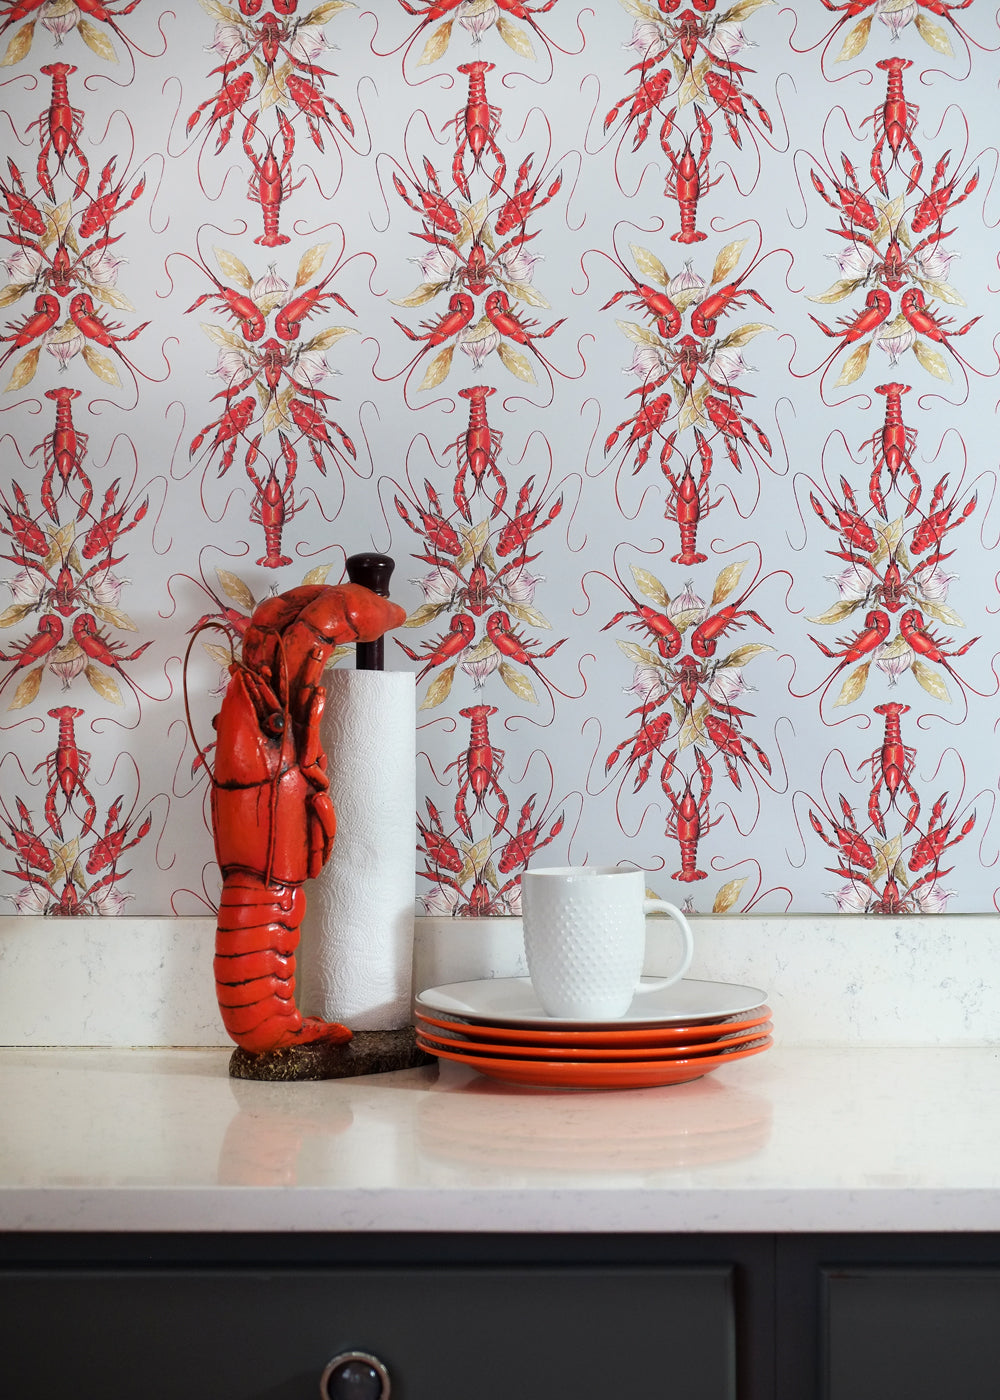 Crawfish Wallpapers